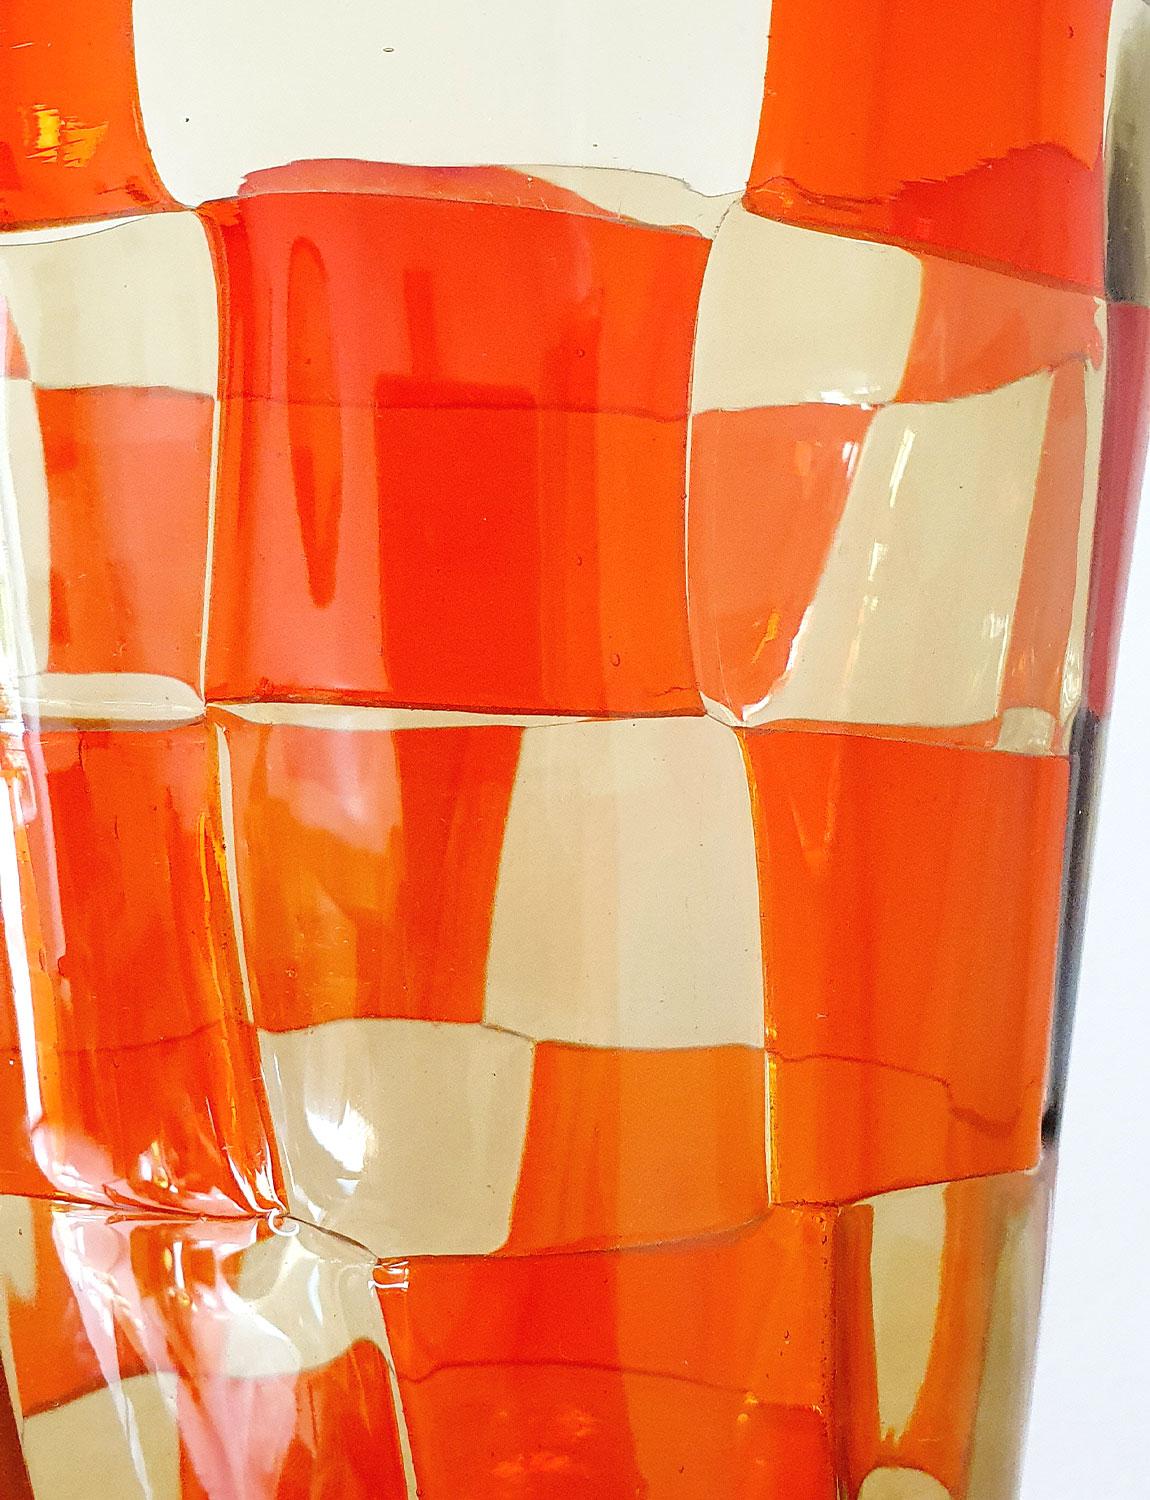 Vase signé Barovier&Toso des années 1970, créé à partir de carrés de verre fondu orange et jaune. Barovier&Toso Il est extrêmement difficile de trouver des pièces d'une telle précision artisanale et d'une telle beauté datant des années 70 encore en